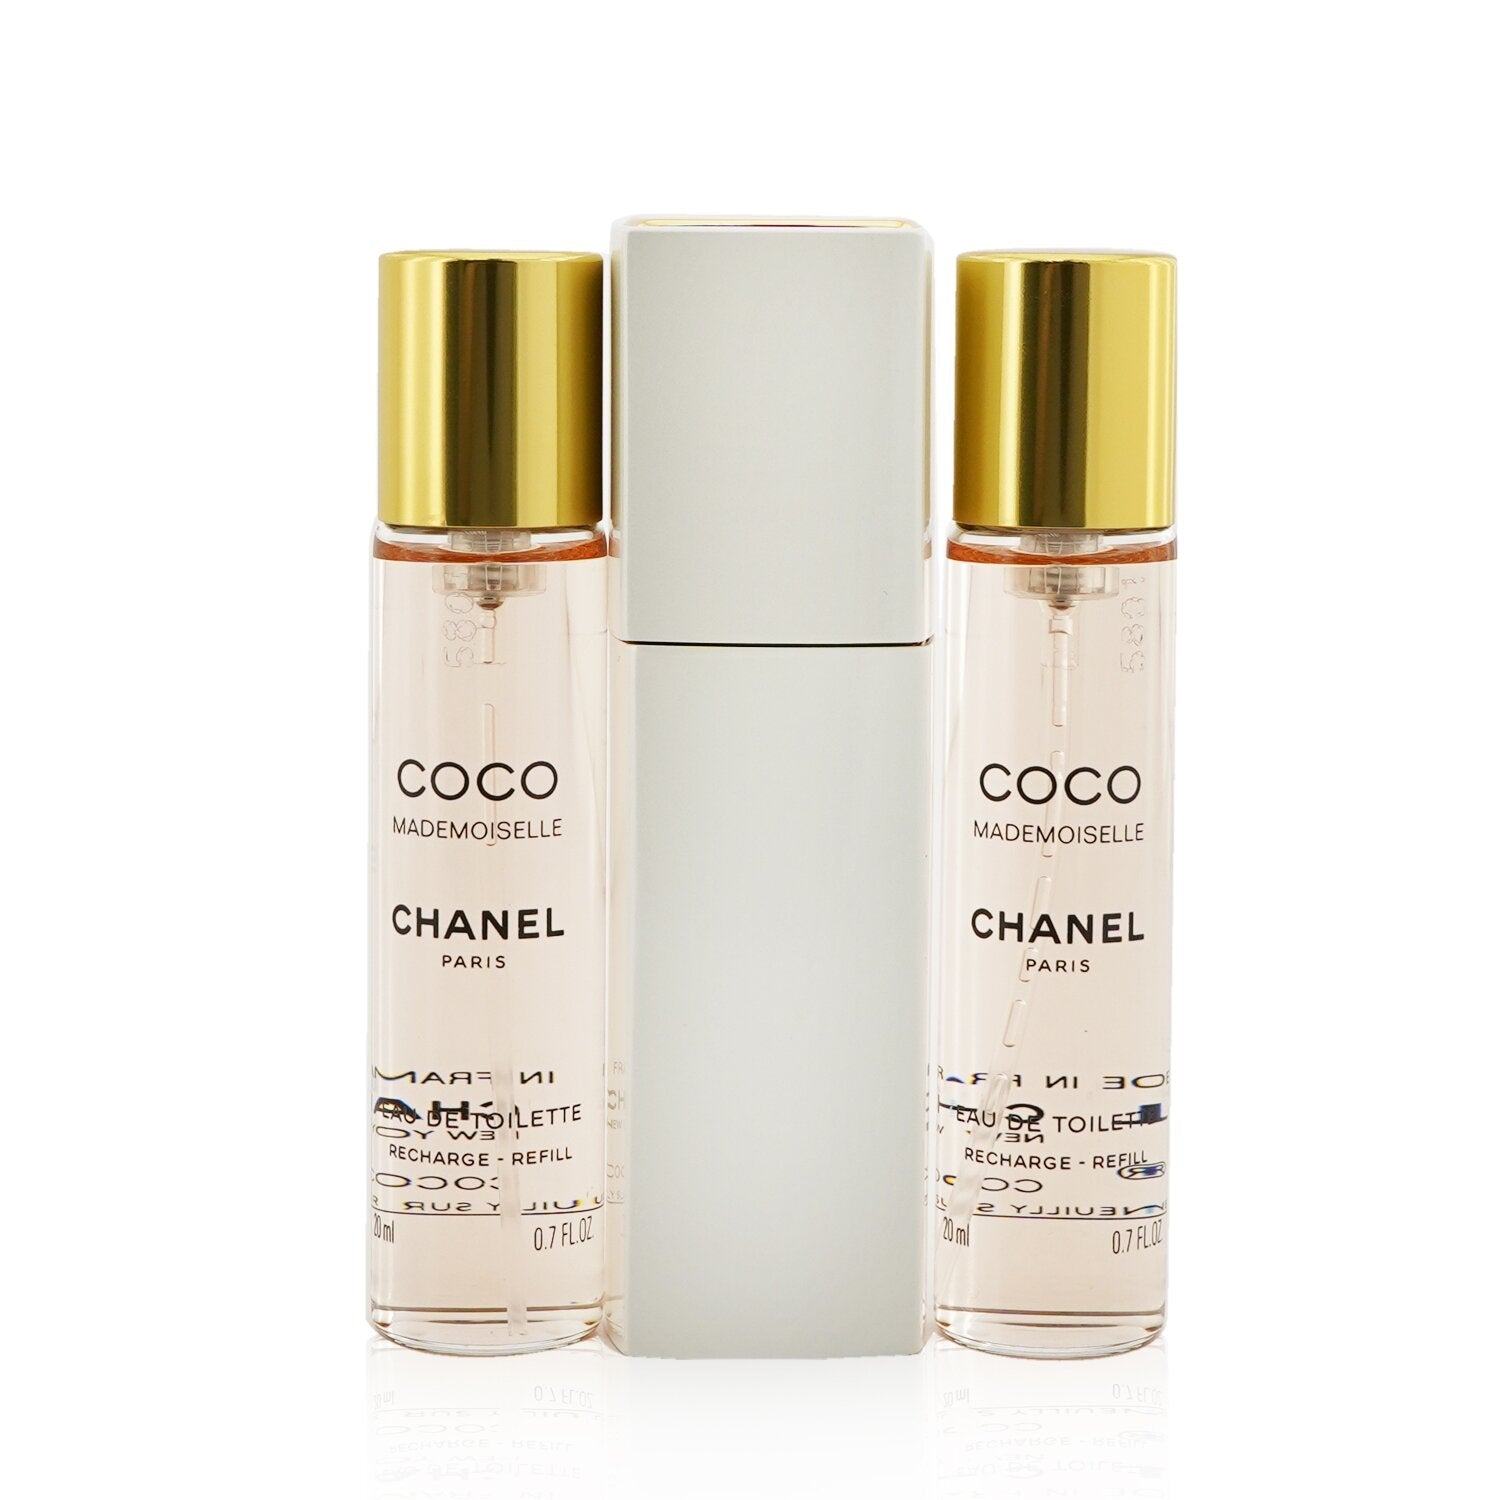 Chanel Coco Mademoiselle Eau De Toilette Spray - 100ml/3.3oz Scent